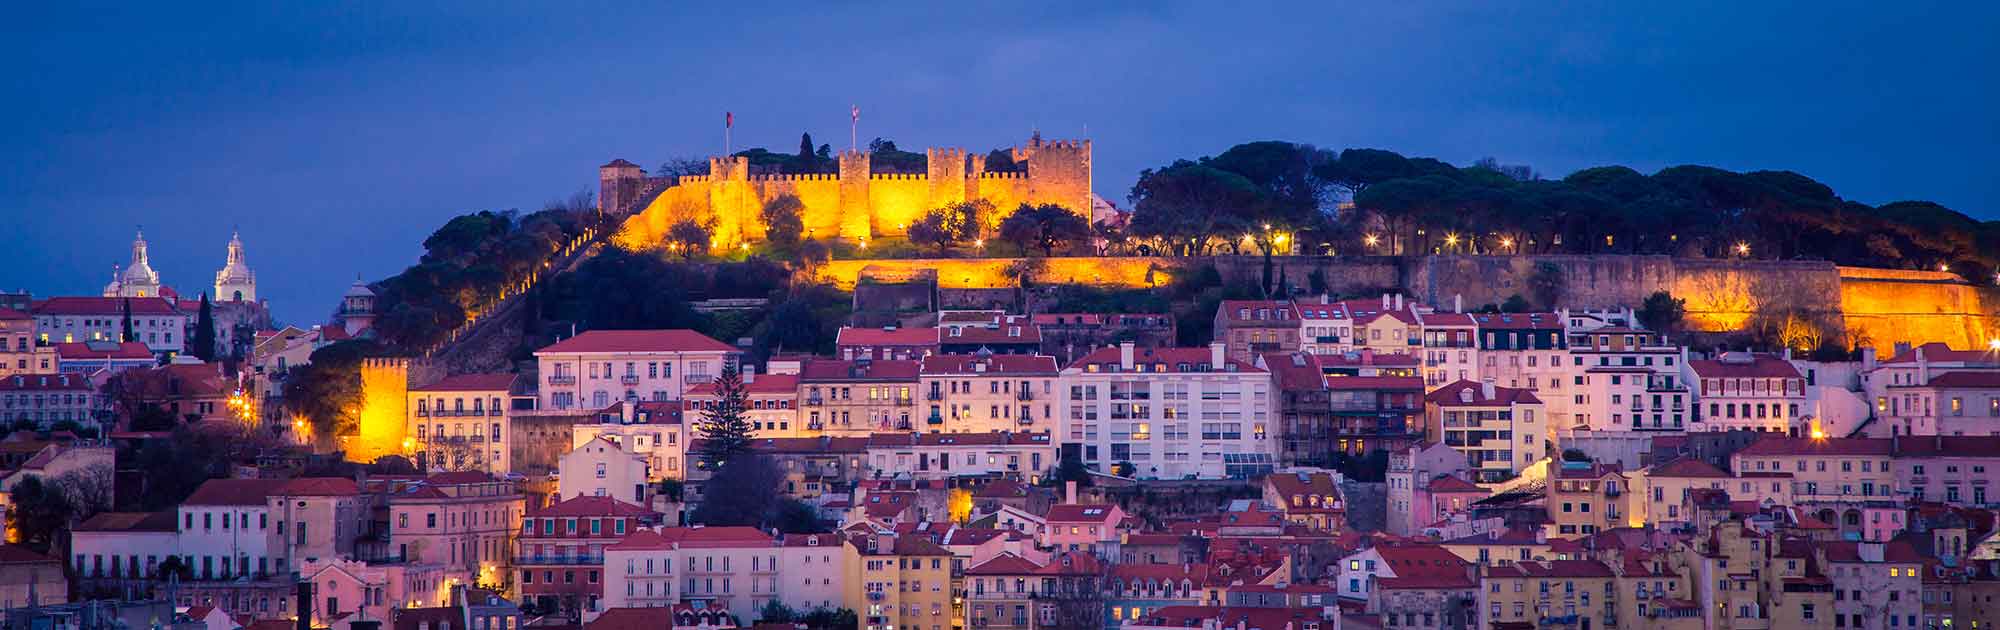 Lisboa a melhor cidade europeia para viver em 2019